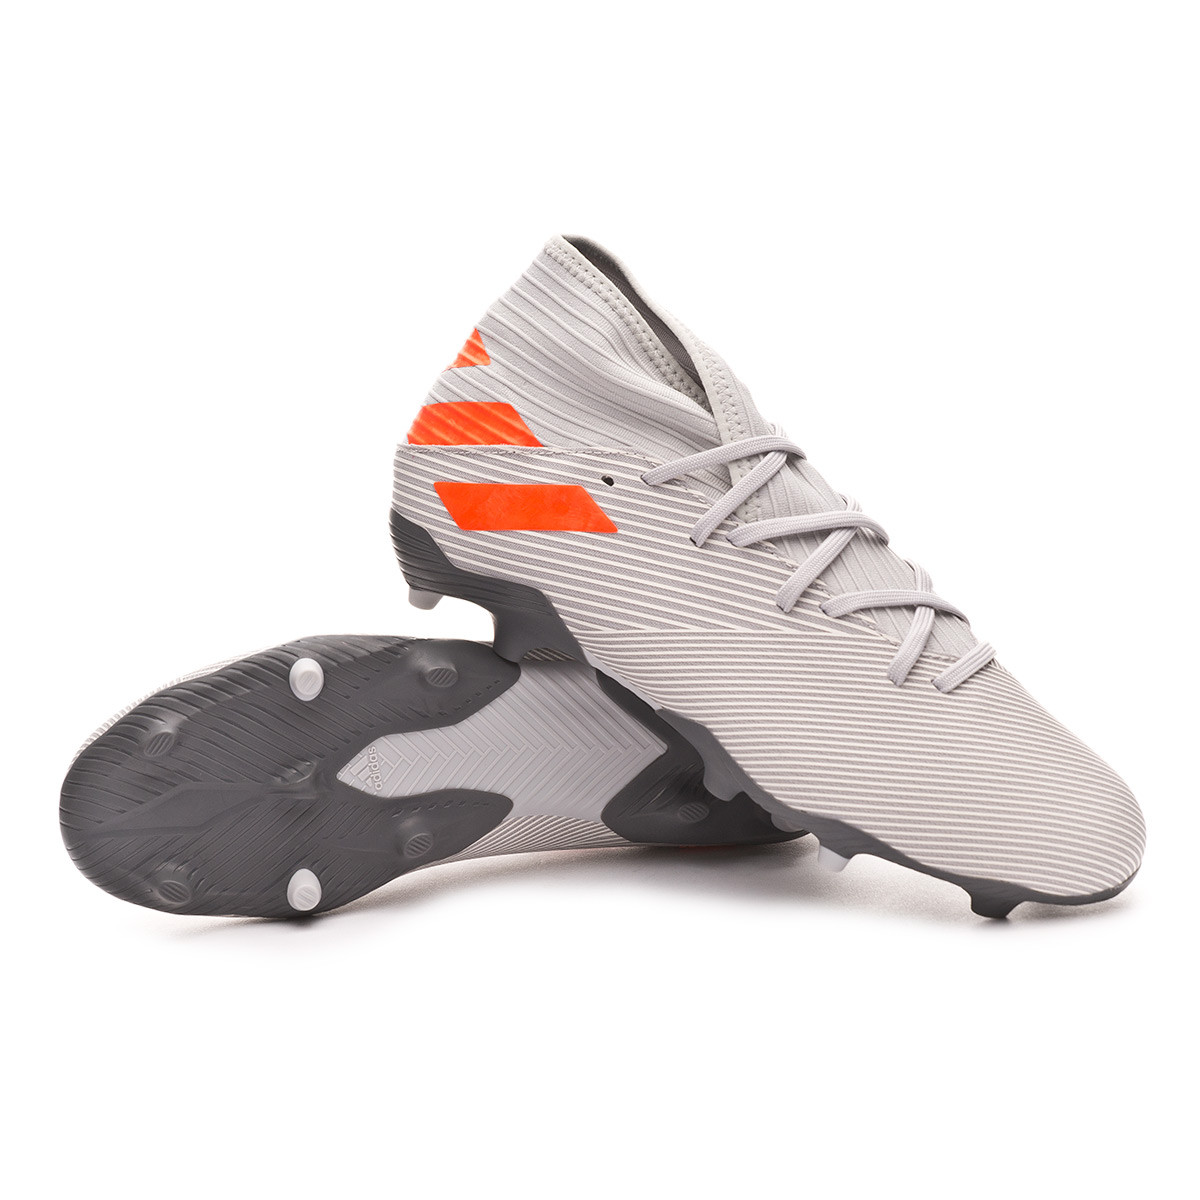 Football Boots adidas Nemeziz 19.3 FG 